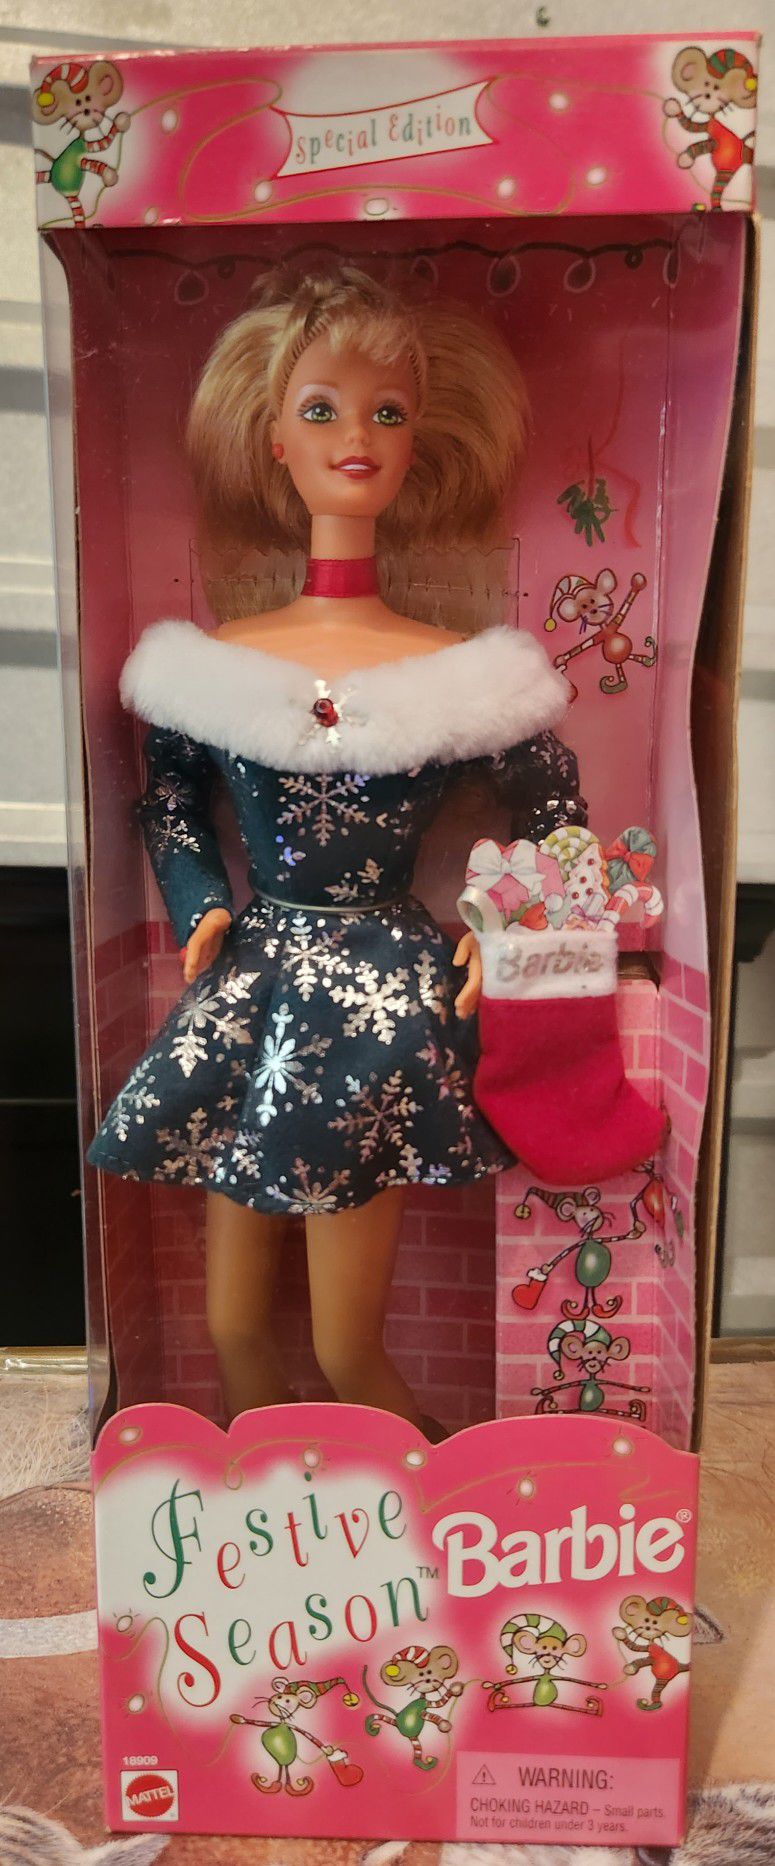 1997 Festive Season Barbie Doll Special Edition